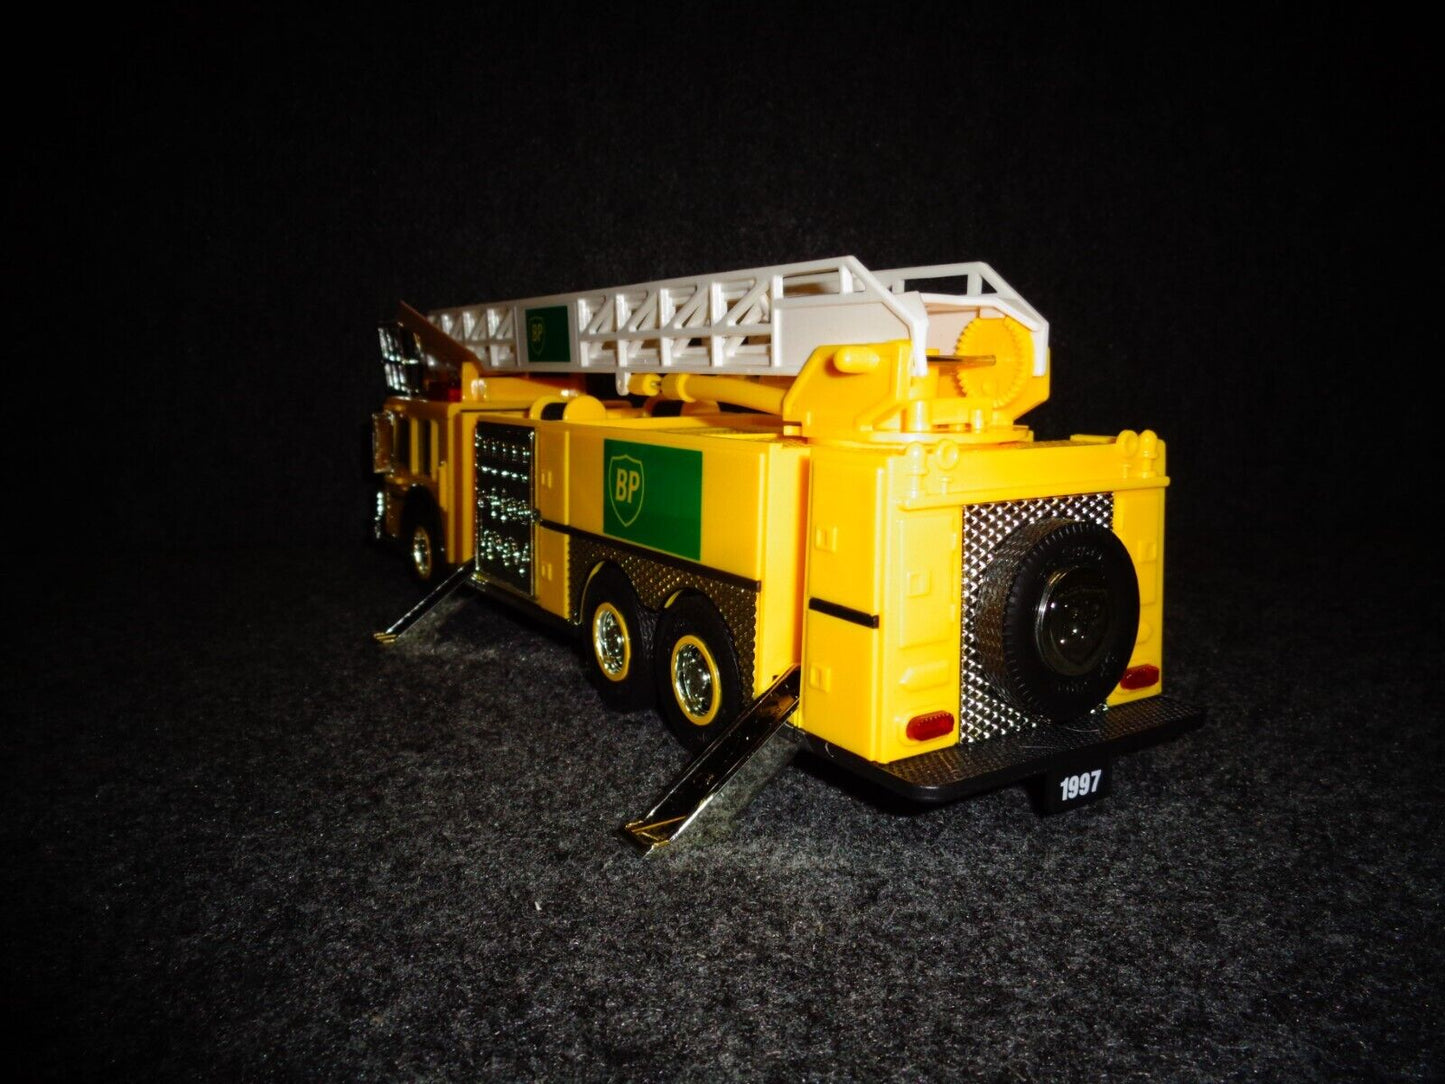 BP 1997 Toy Fire Truck